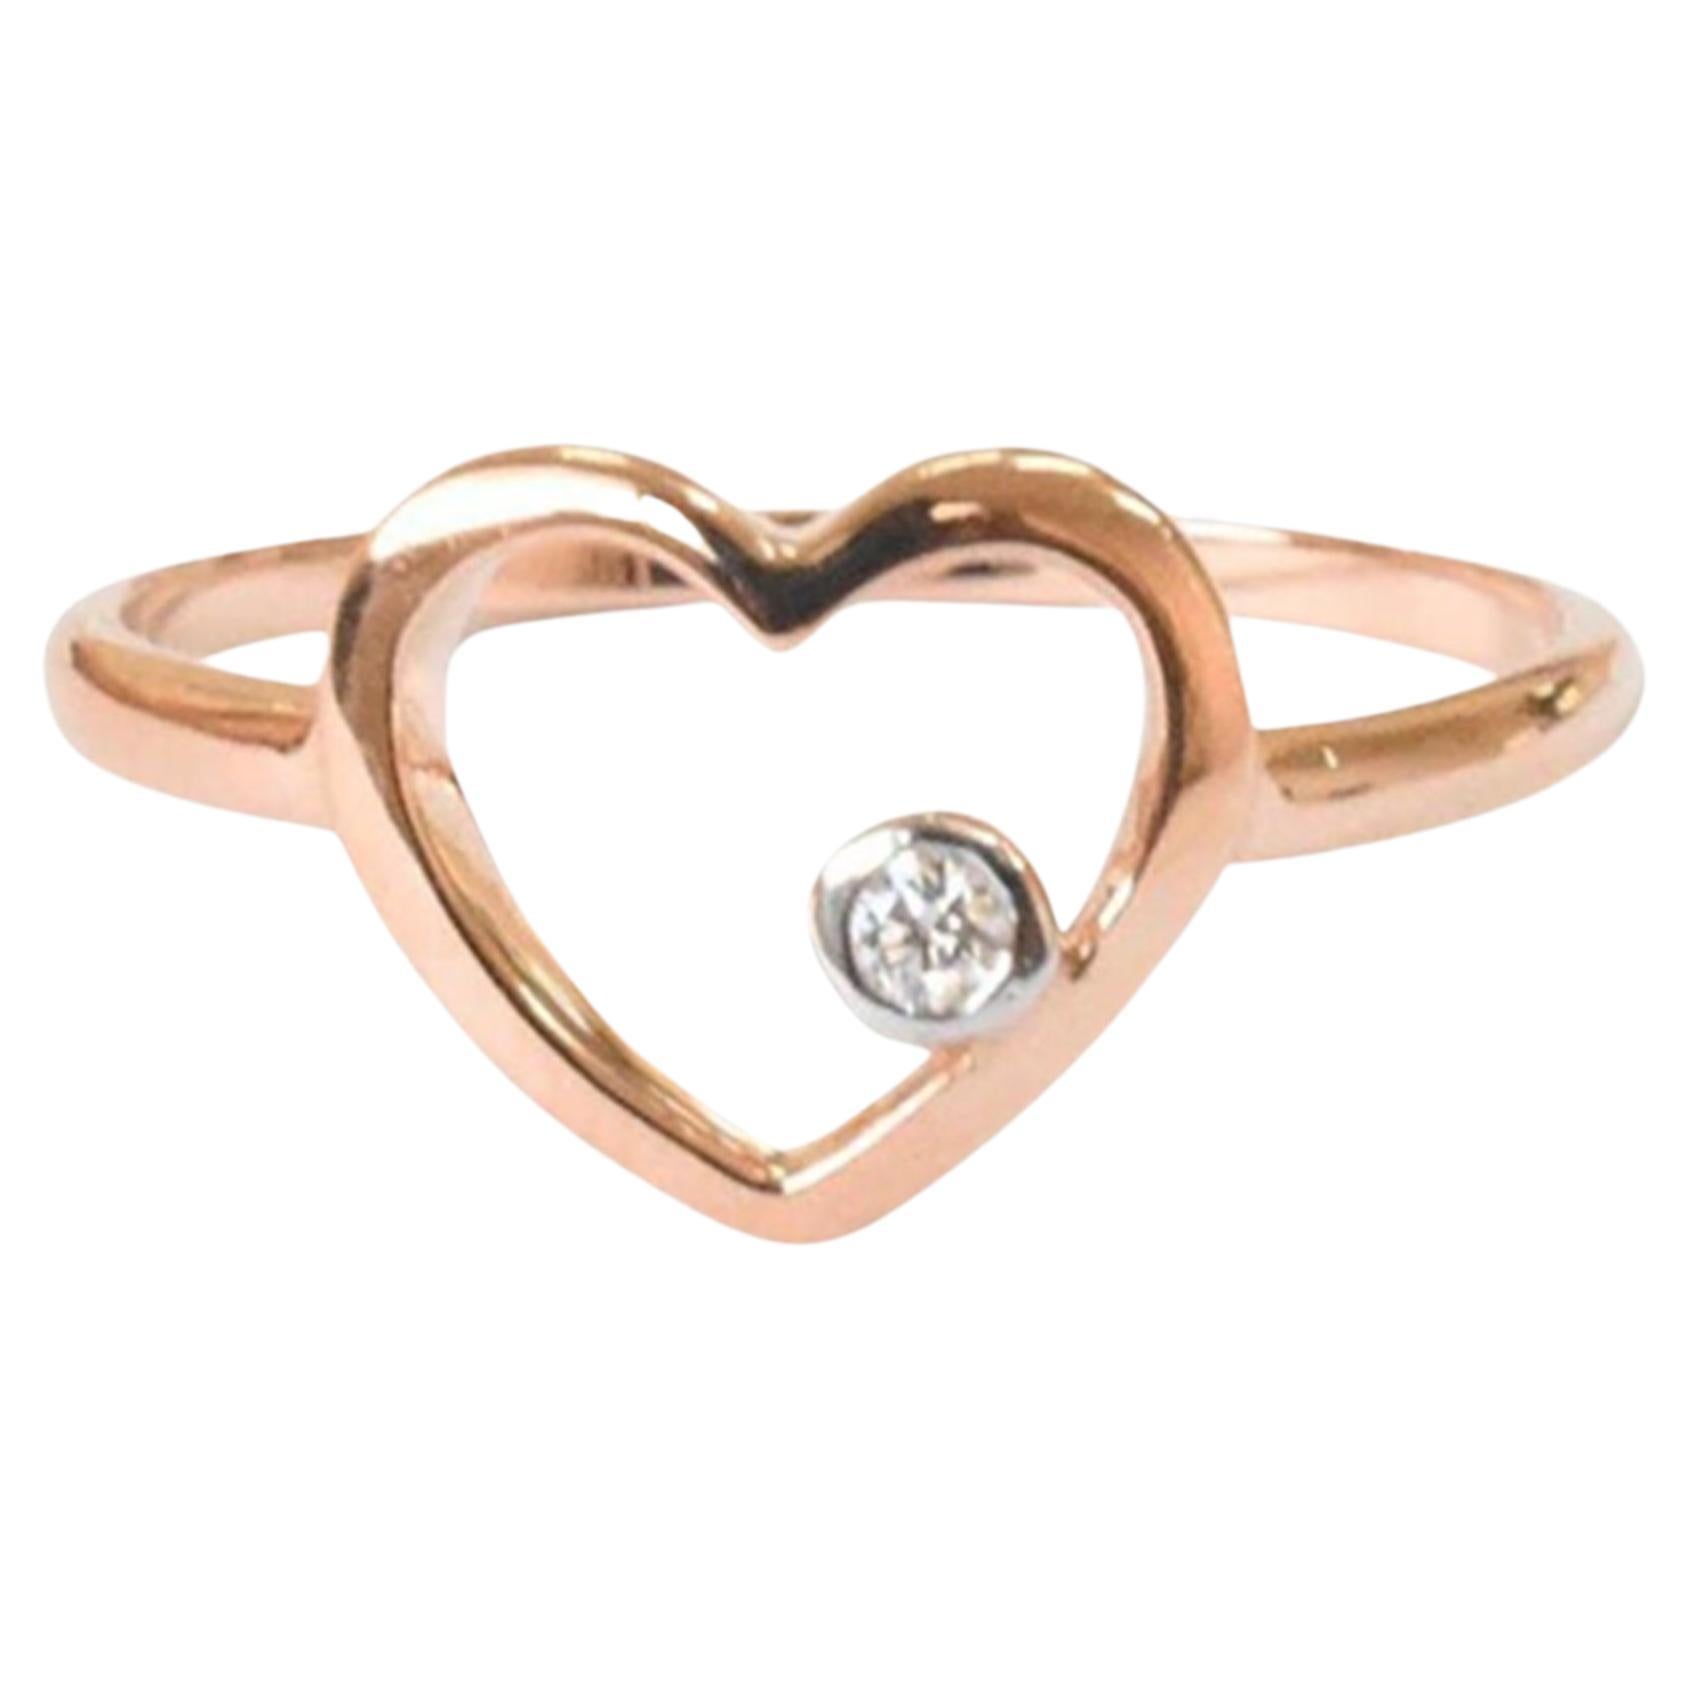 For Sale:  18k Rose Gold Diamond Heart Ring Minimal Heart Ring with Bezel Set Diamond 2